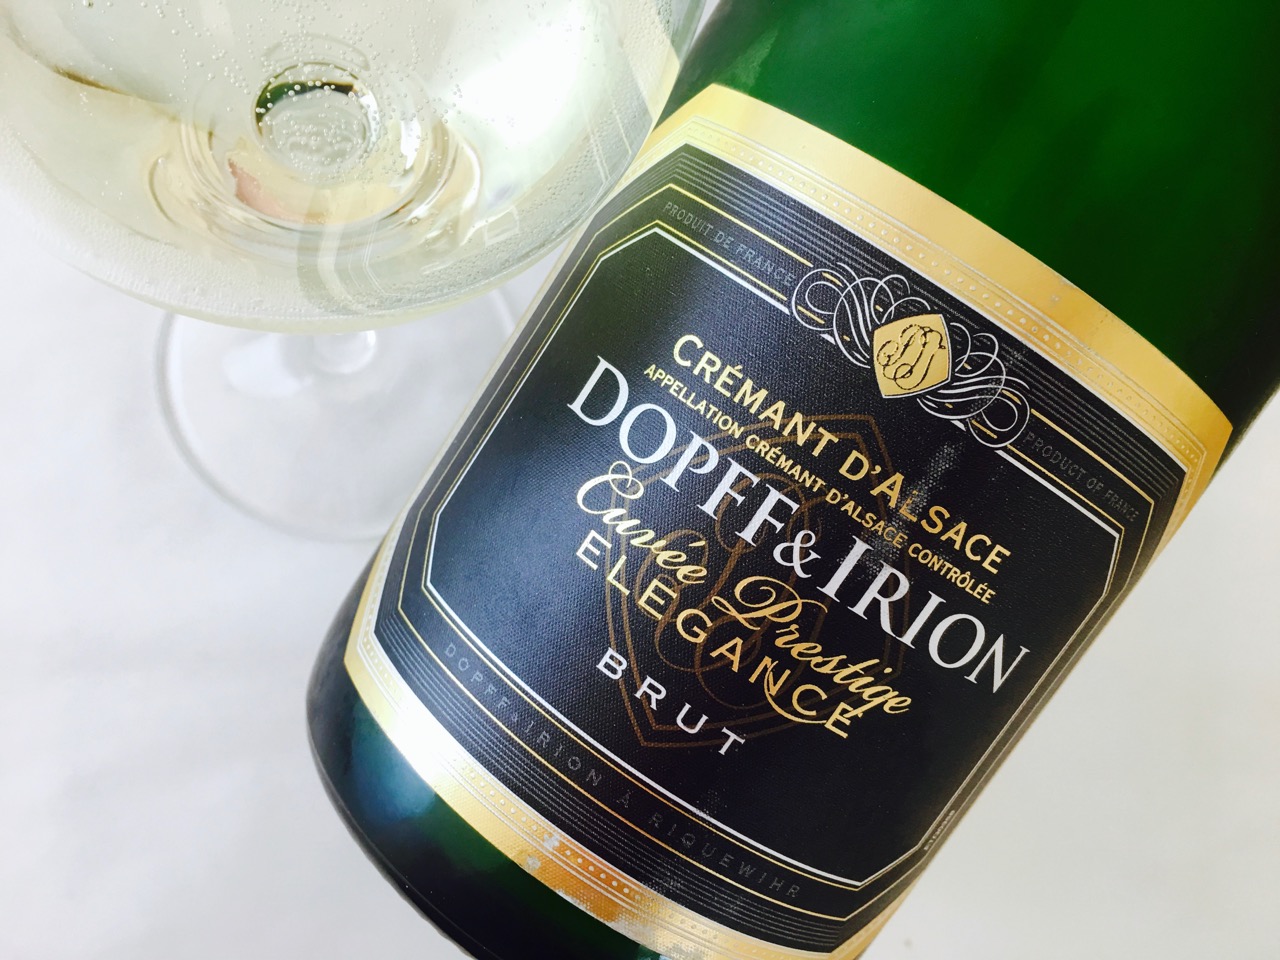 NV Dopff & Irion Cuvée Prestige Elegance Brut Crémant d’Alsace